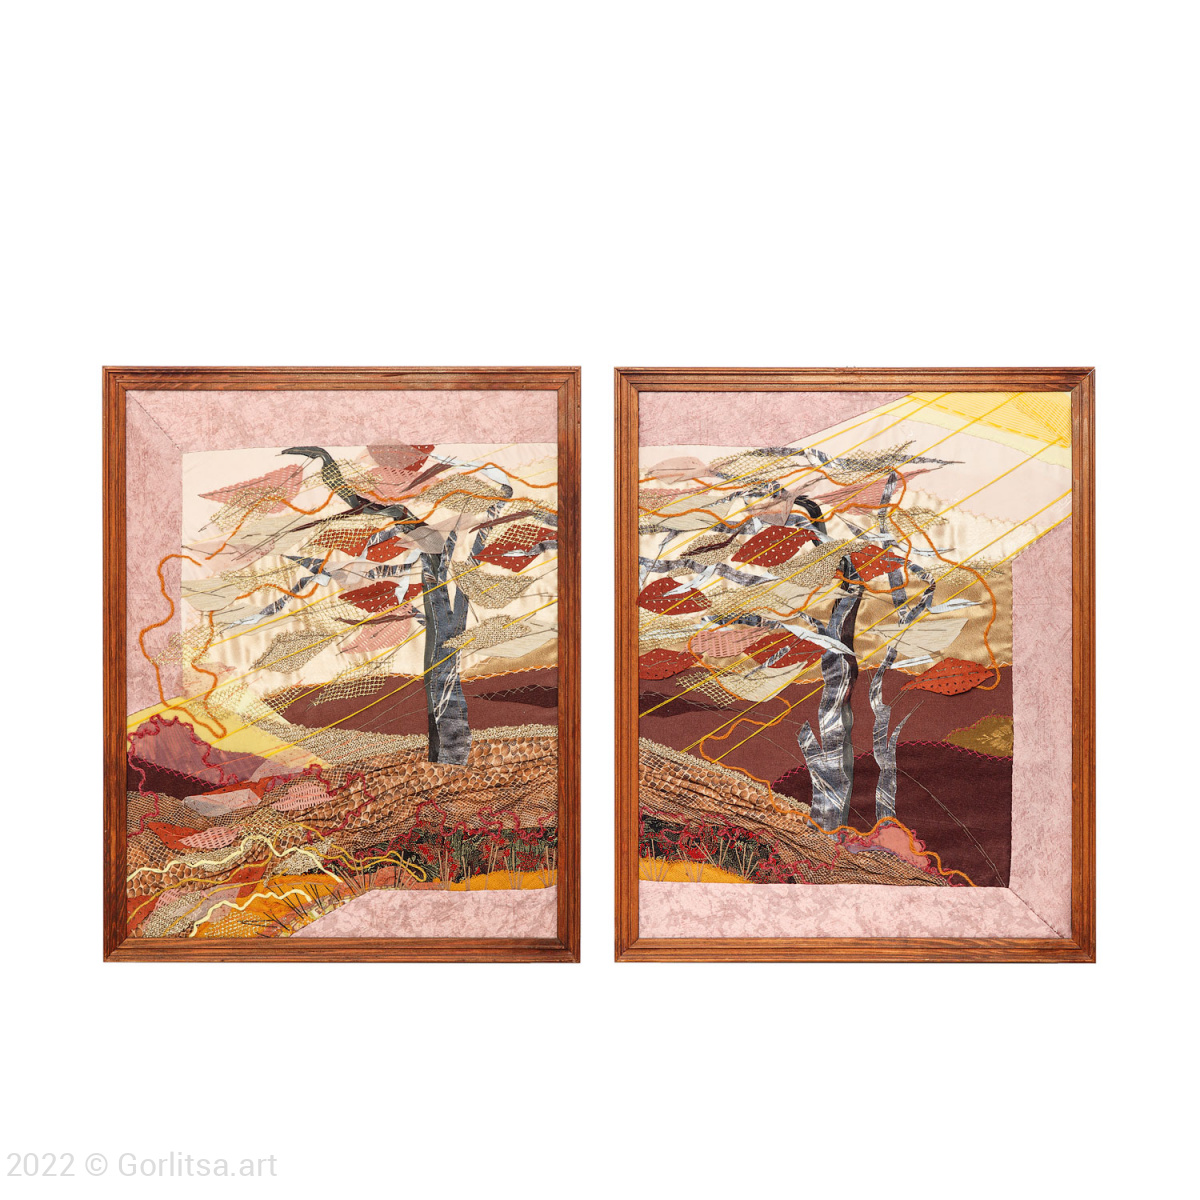 Панно диптих «Листопад» в технике арт-квилт, ручная работа  Савельева Н.К.